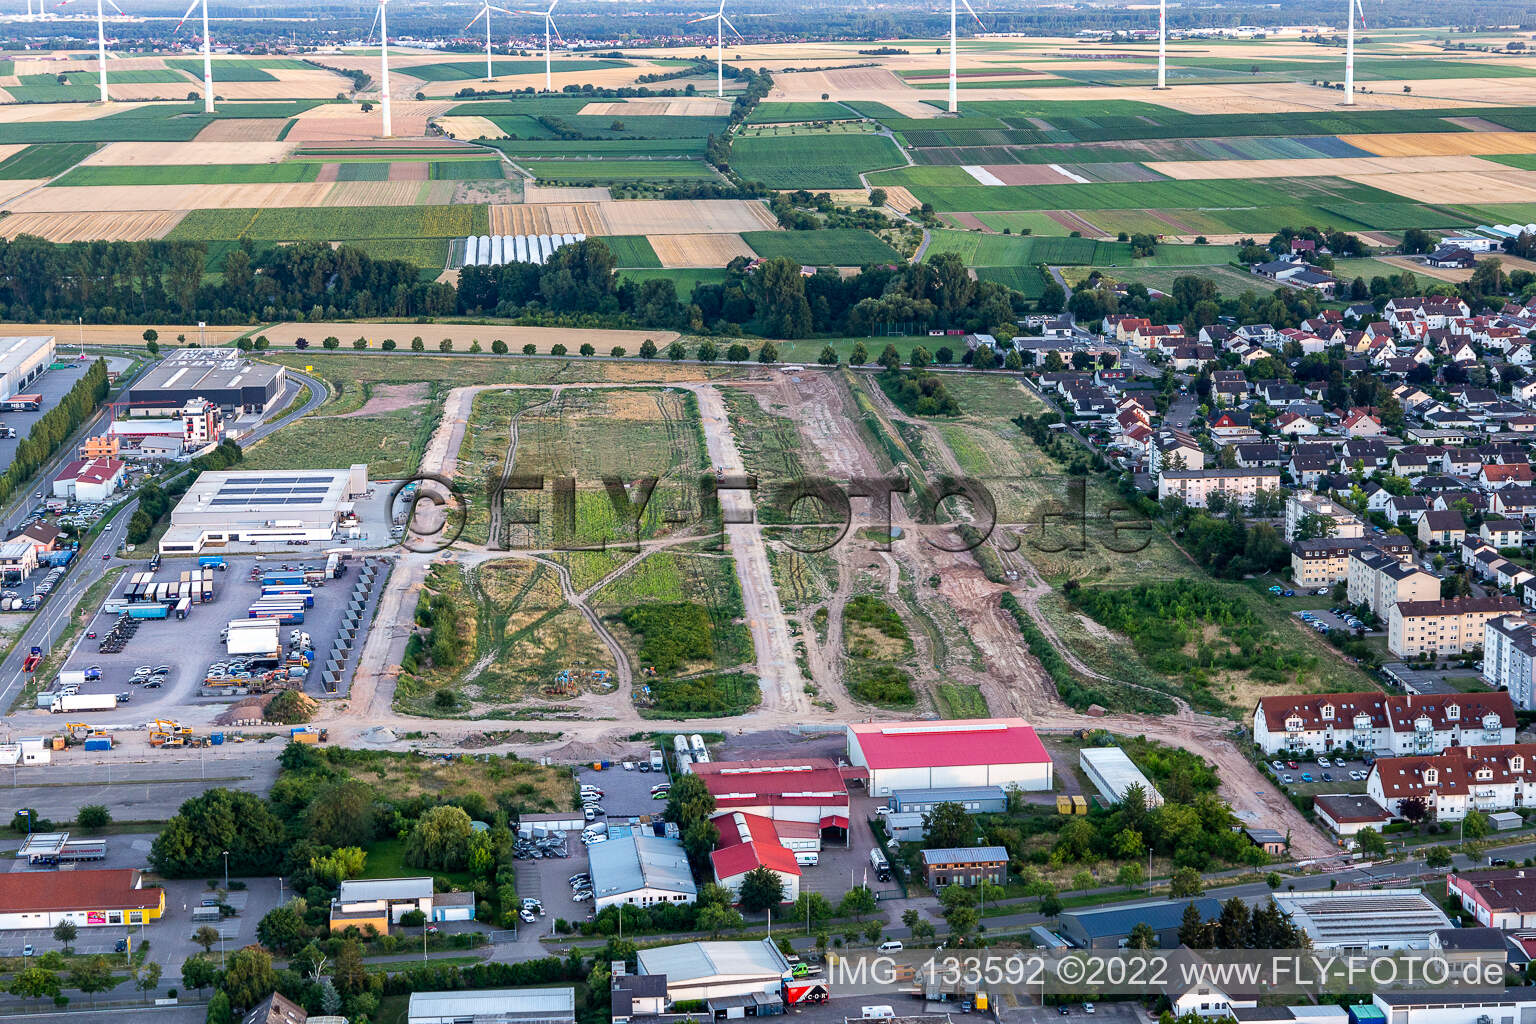 Vue aérienne de Zone d'expansion du parc d'activités Interpark à Offenbach an der Queich dans le département Rhénanie-Palatinat, Allemagne